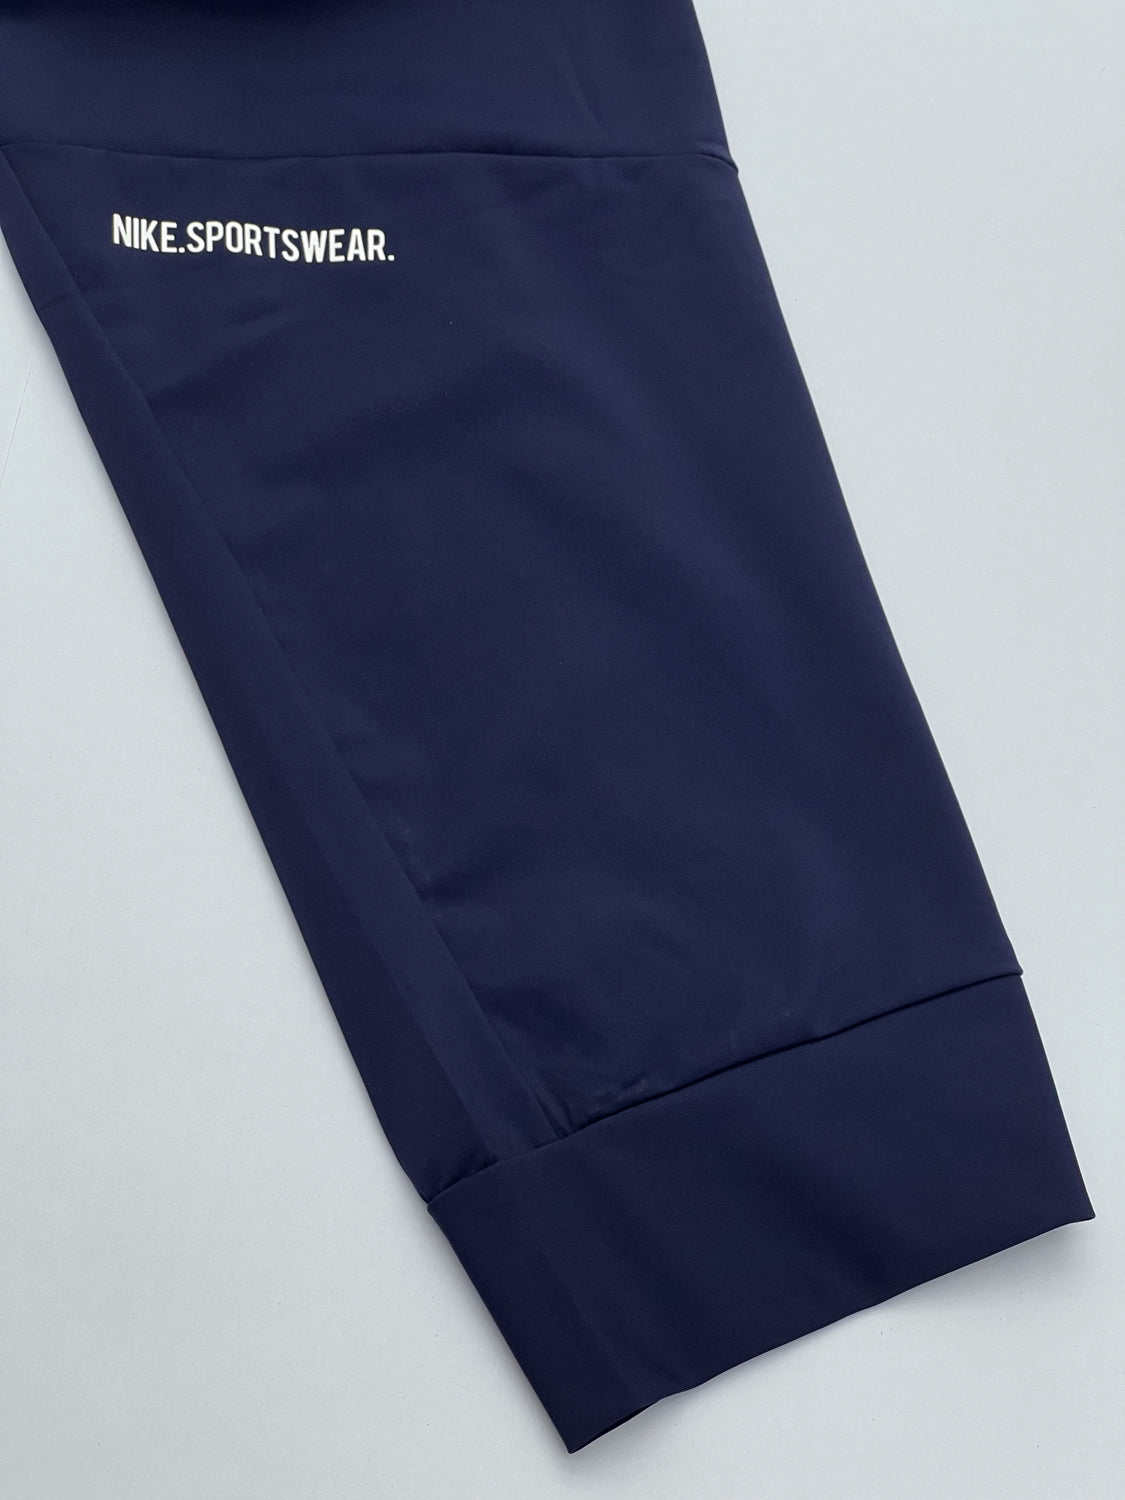 Nke Bottom Slogan Imported Trouser